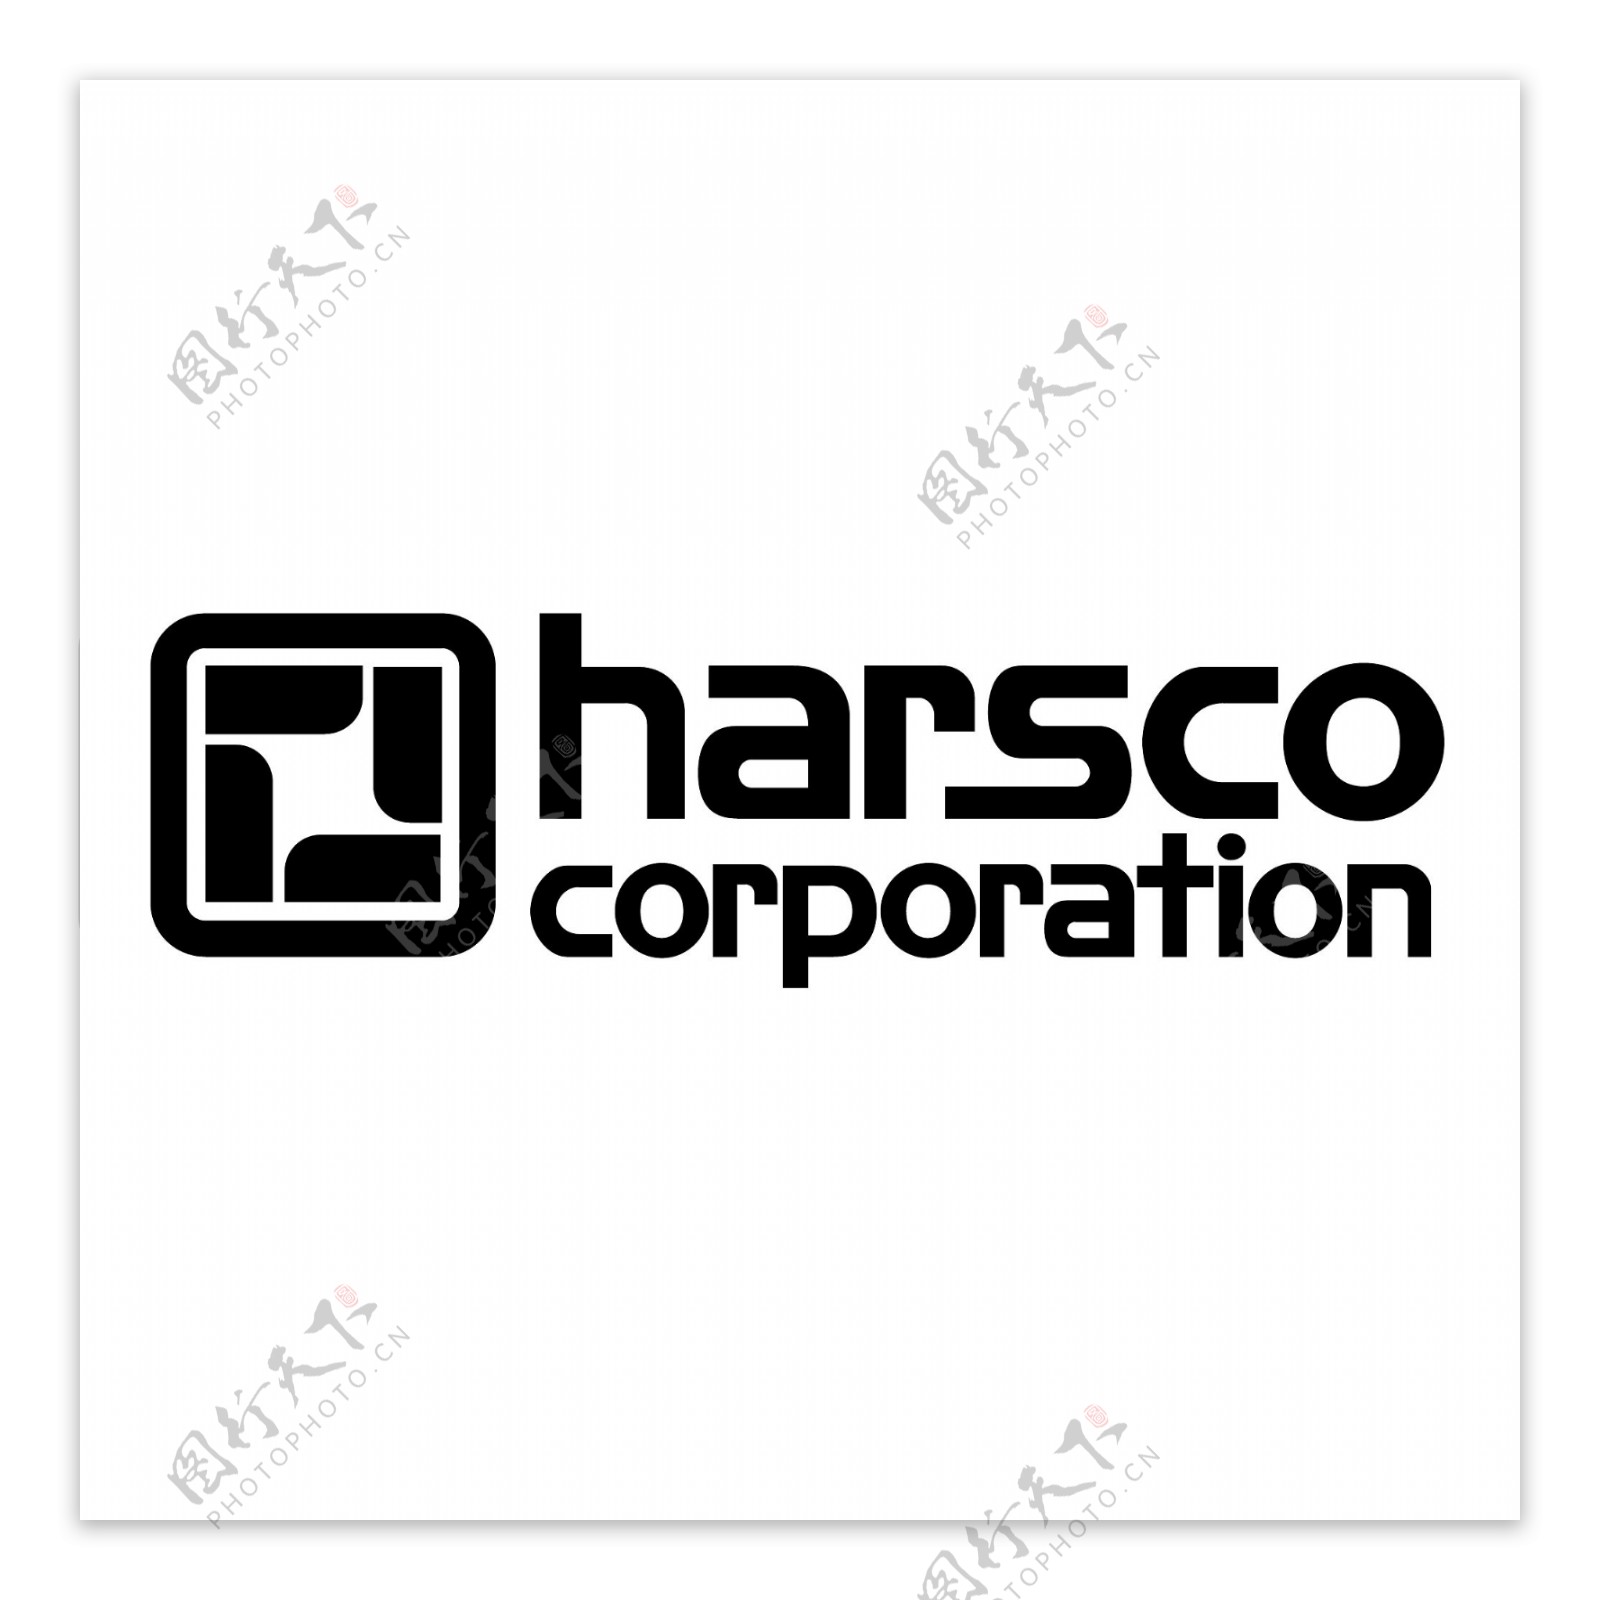 哈斯科公司